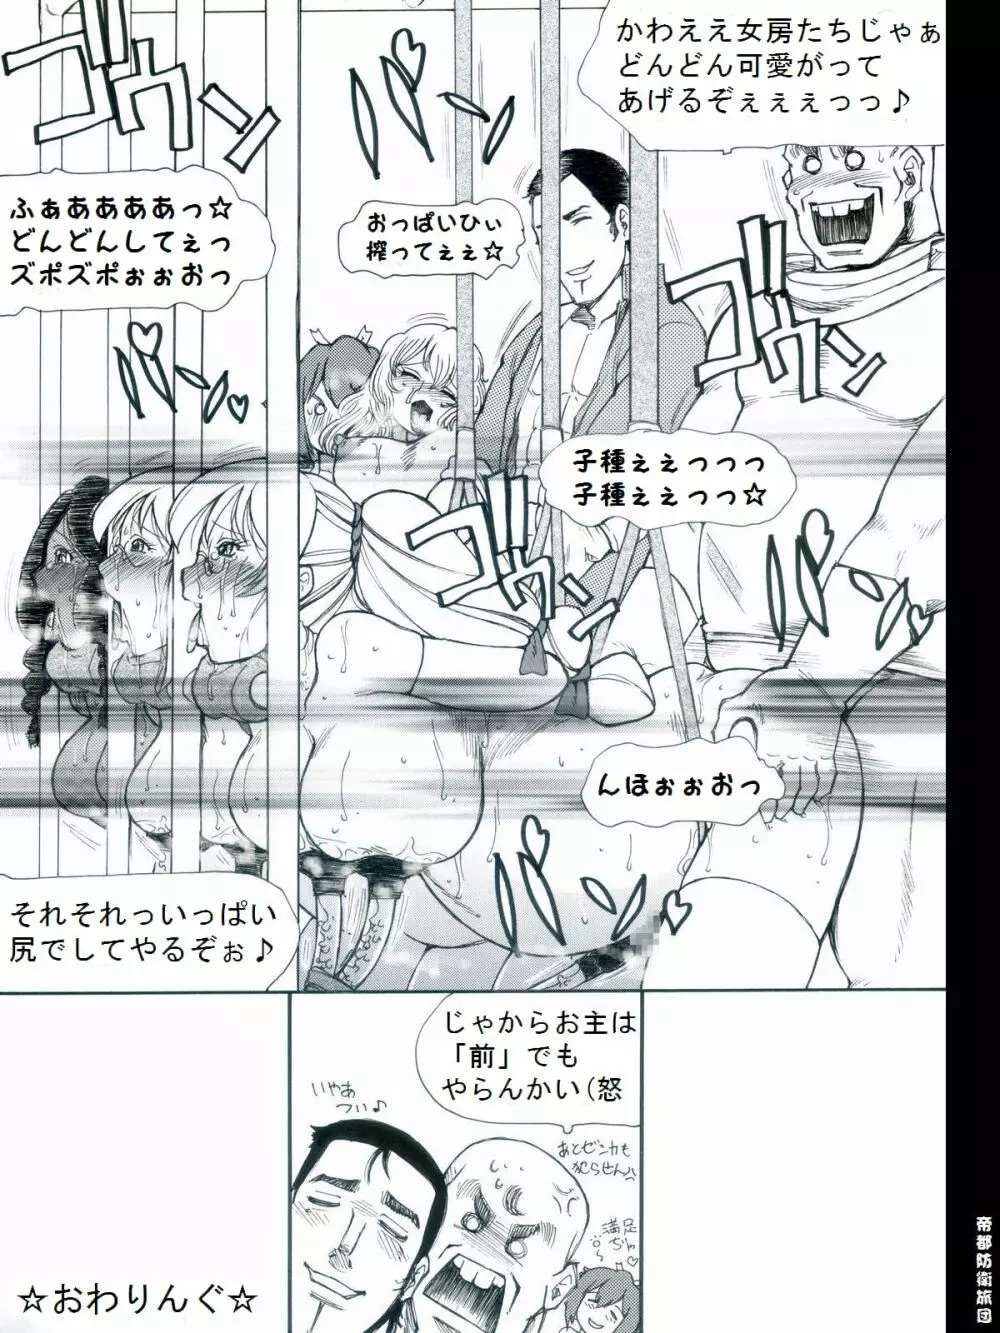 [帝都防衛旅団] RTKBOOK 9-3 「M○Xいぢり(3) 『PANPAN-MAN』」 24ページ